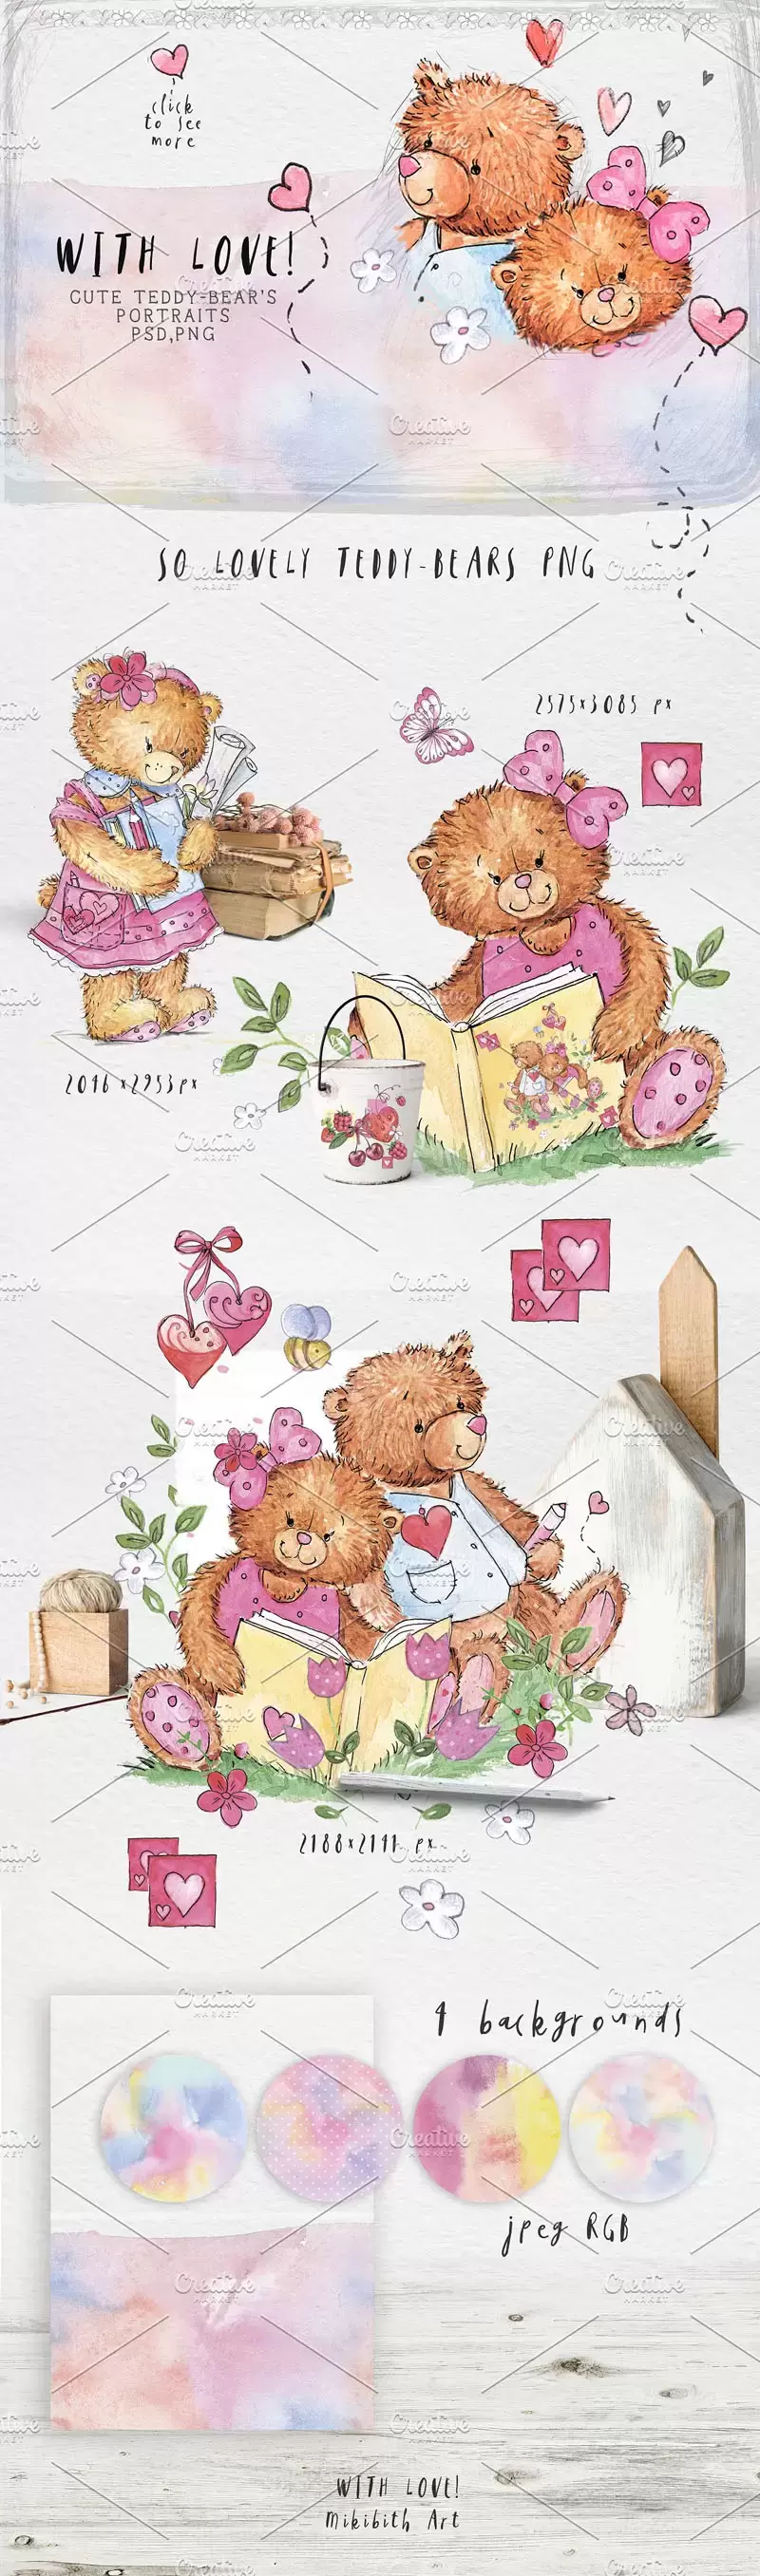 可爱水彩小熊爱情元素PSD/JPG/PNG素材插图2